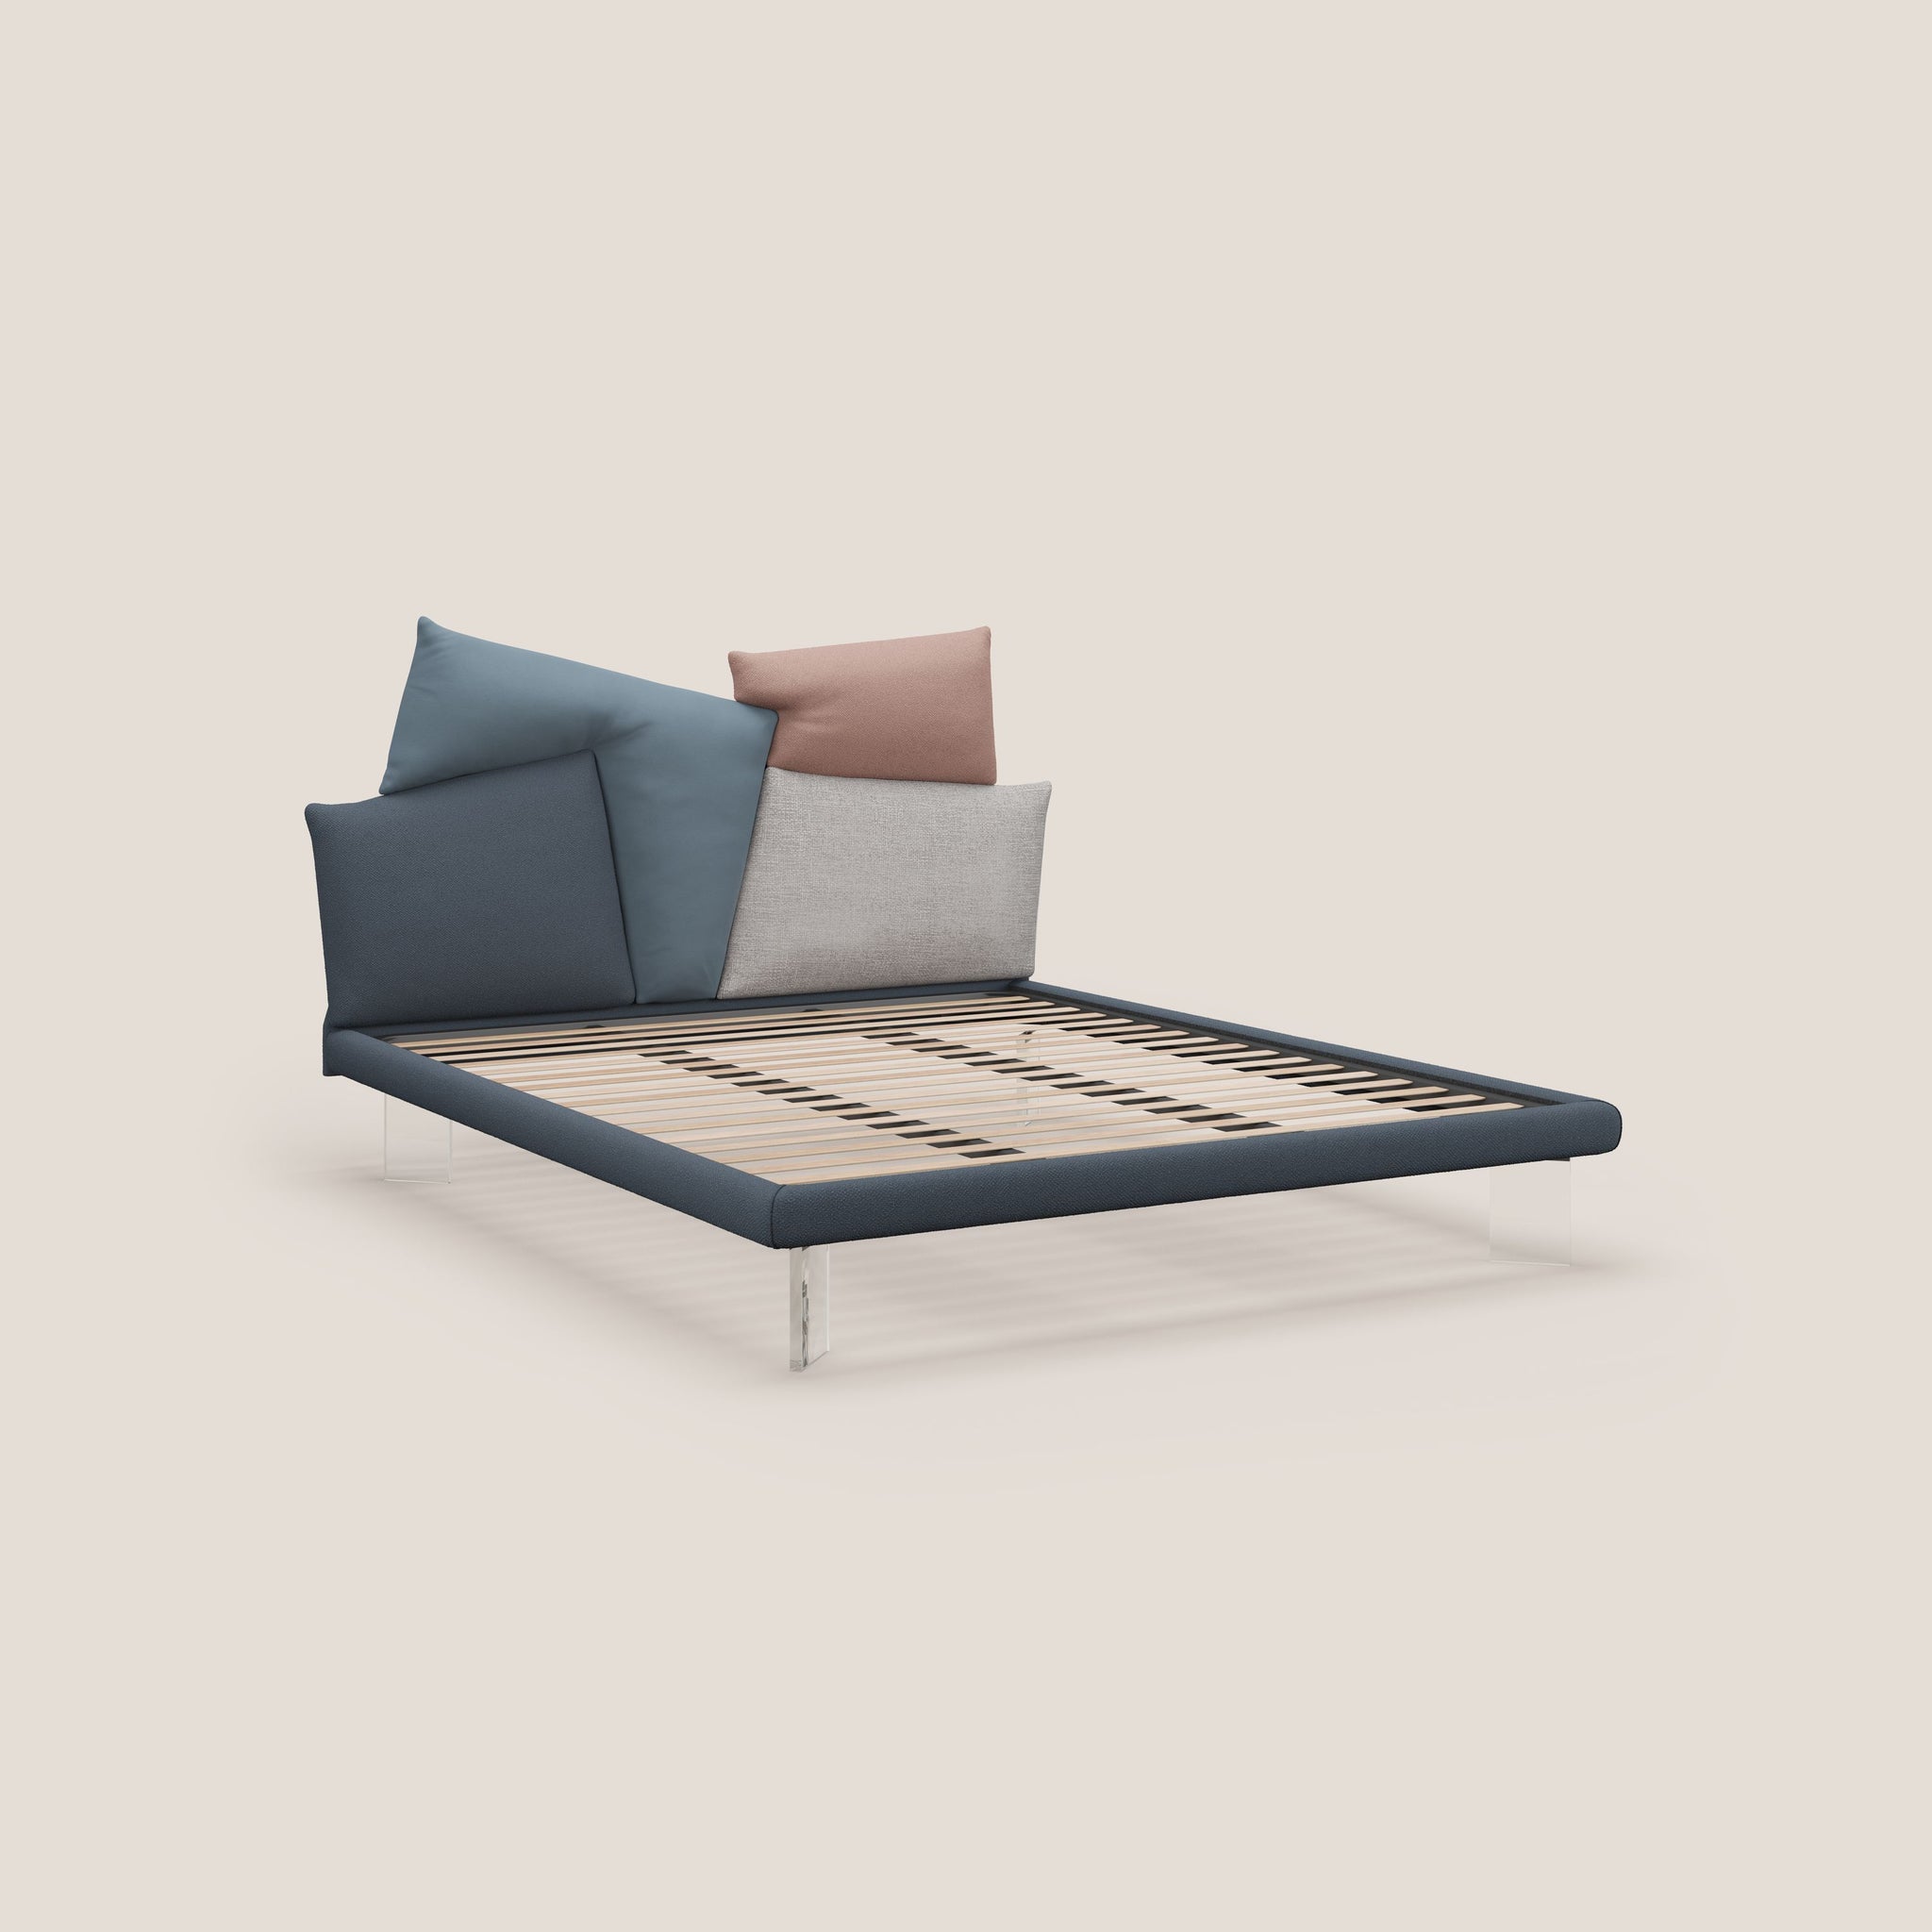 Rebus letto imbottito dal design moderno con piedi trasparenti in plexiglass